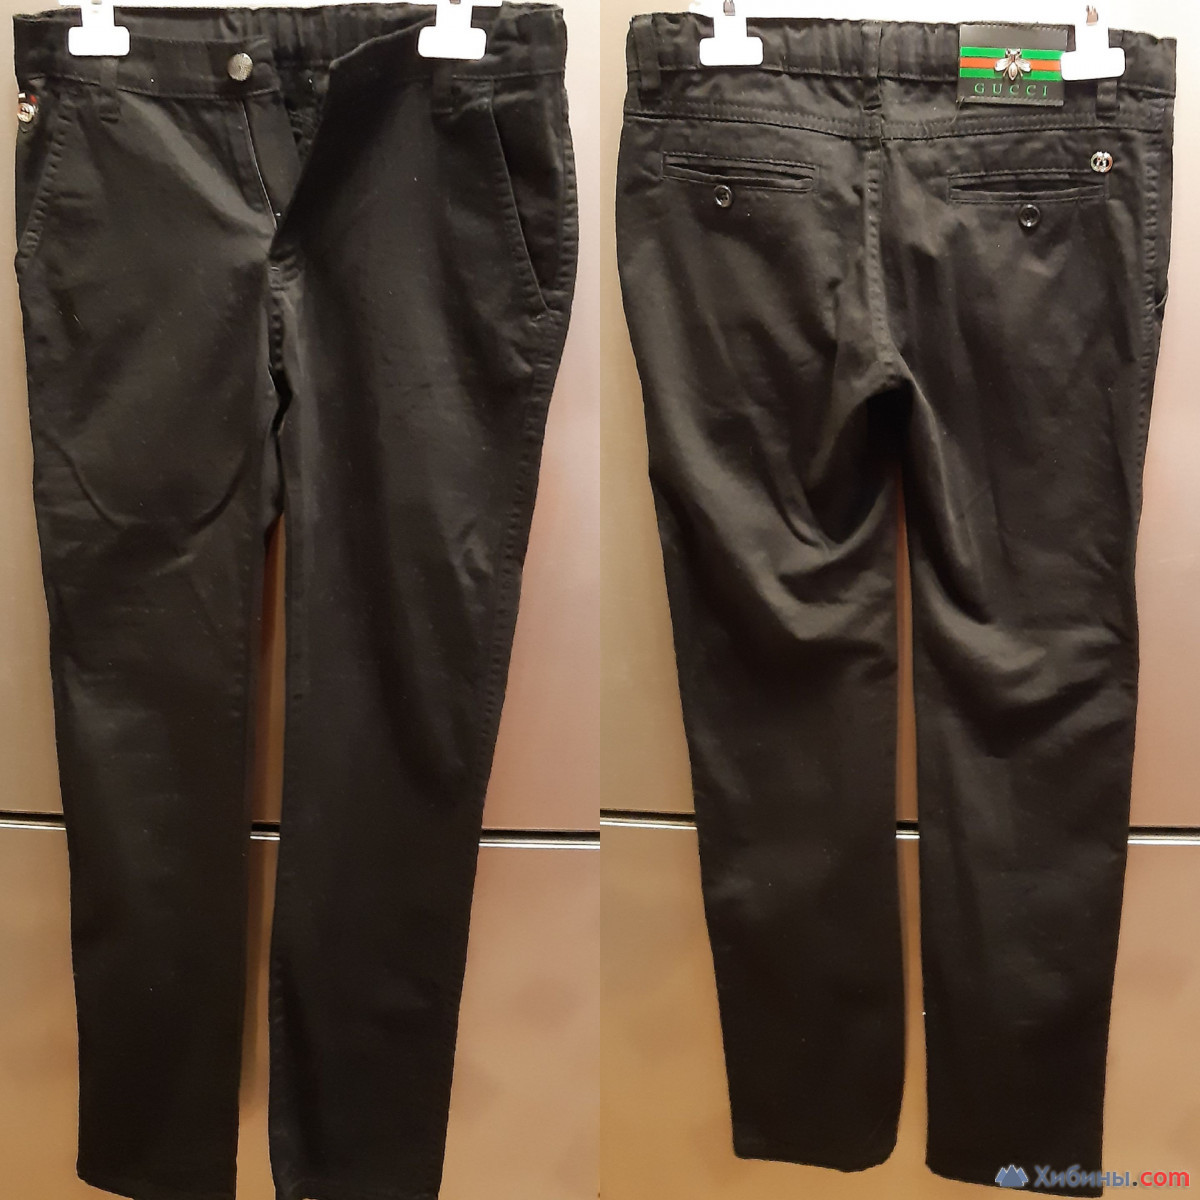 Чёрные брюки для мальчика 146-152 см (10-12 лет) в Апатитах за 1500 руб